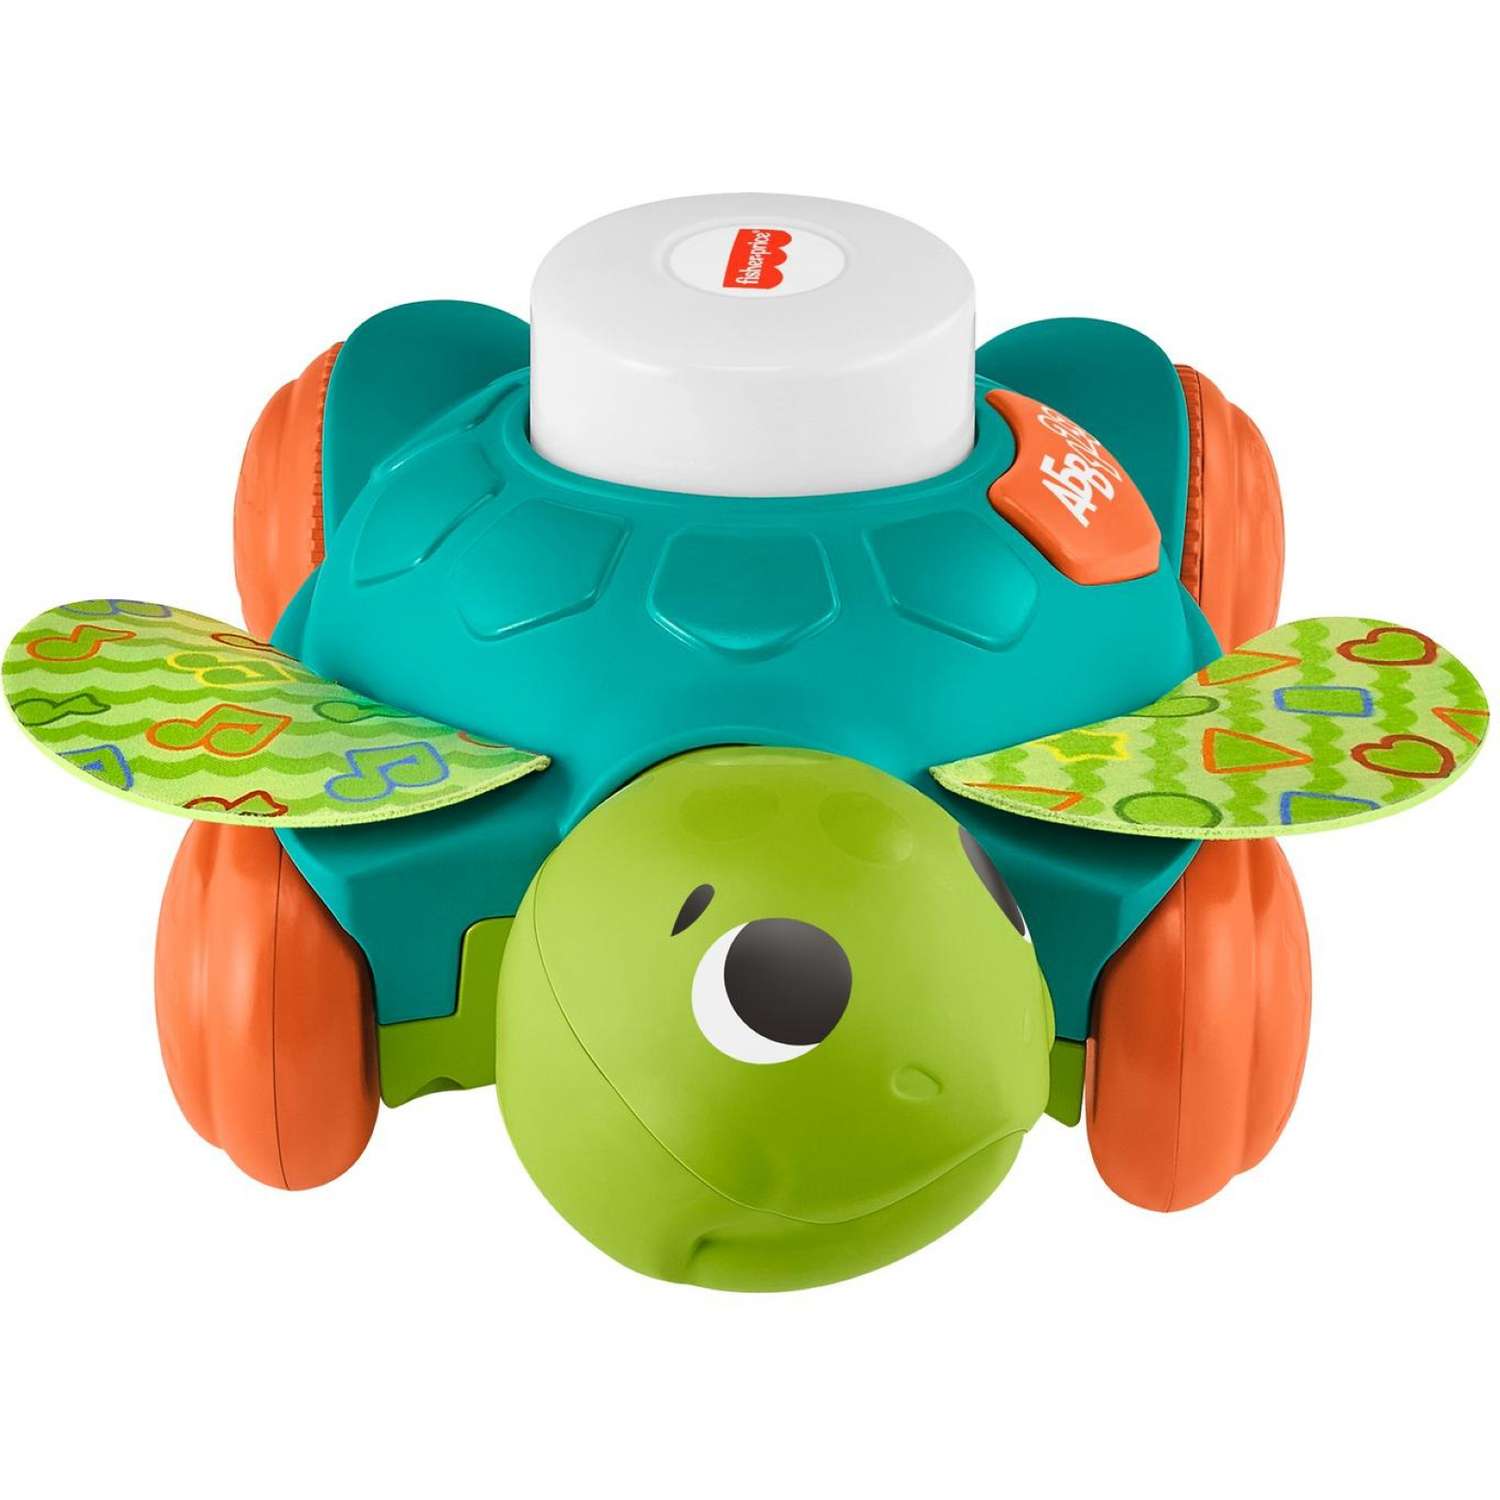 Игрушка Fisher Price Линкималс Морская черепаха для малышей развивающая HDJ17 - фото 3